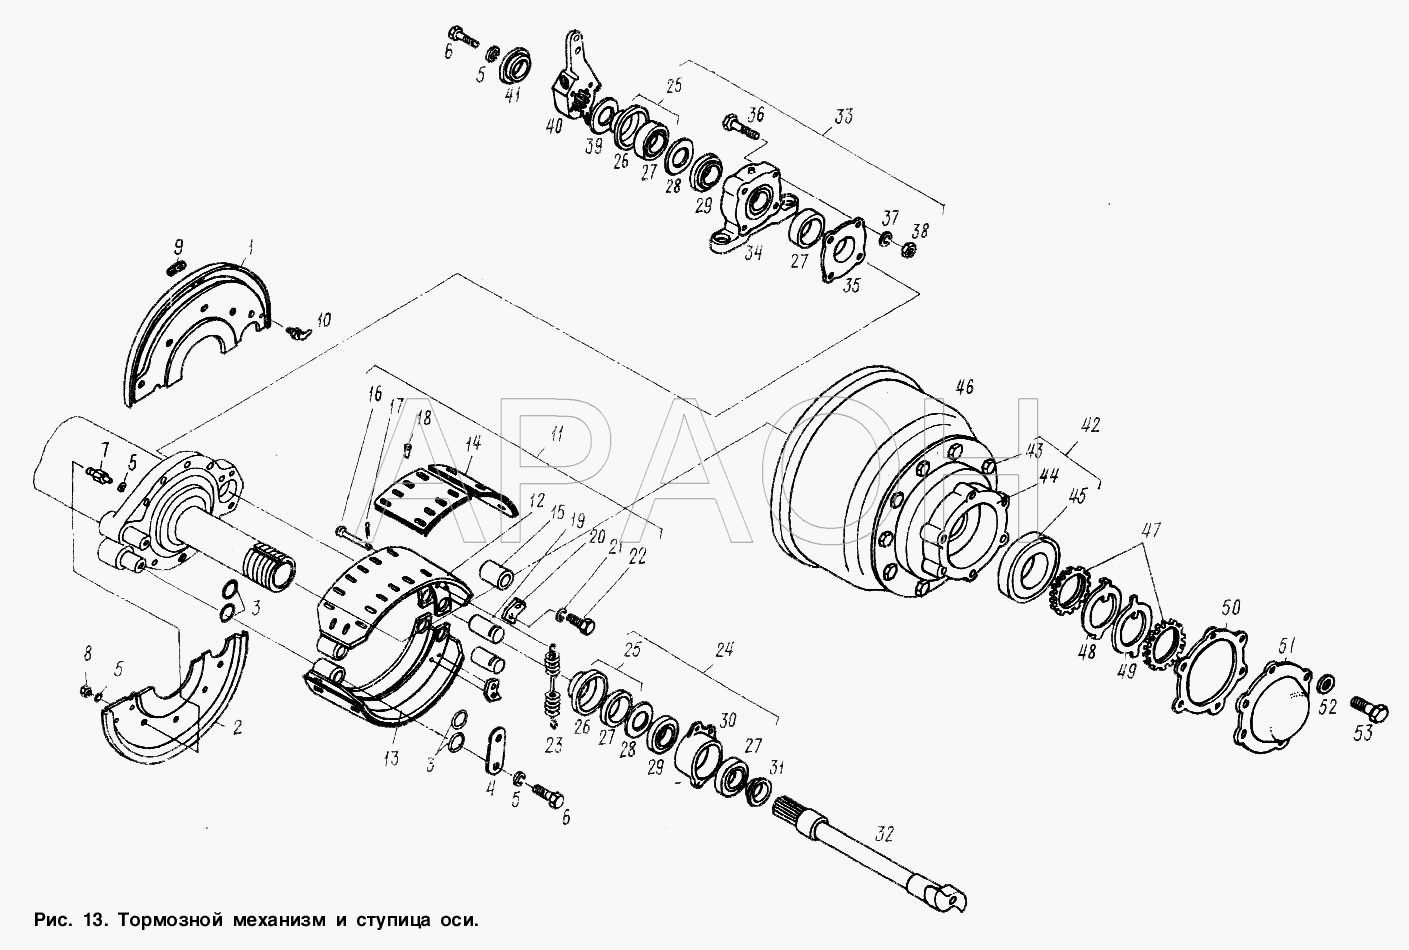 Тормозной механизм и ступица оси МАЗ-9506